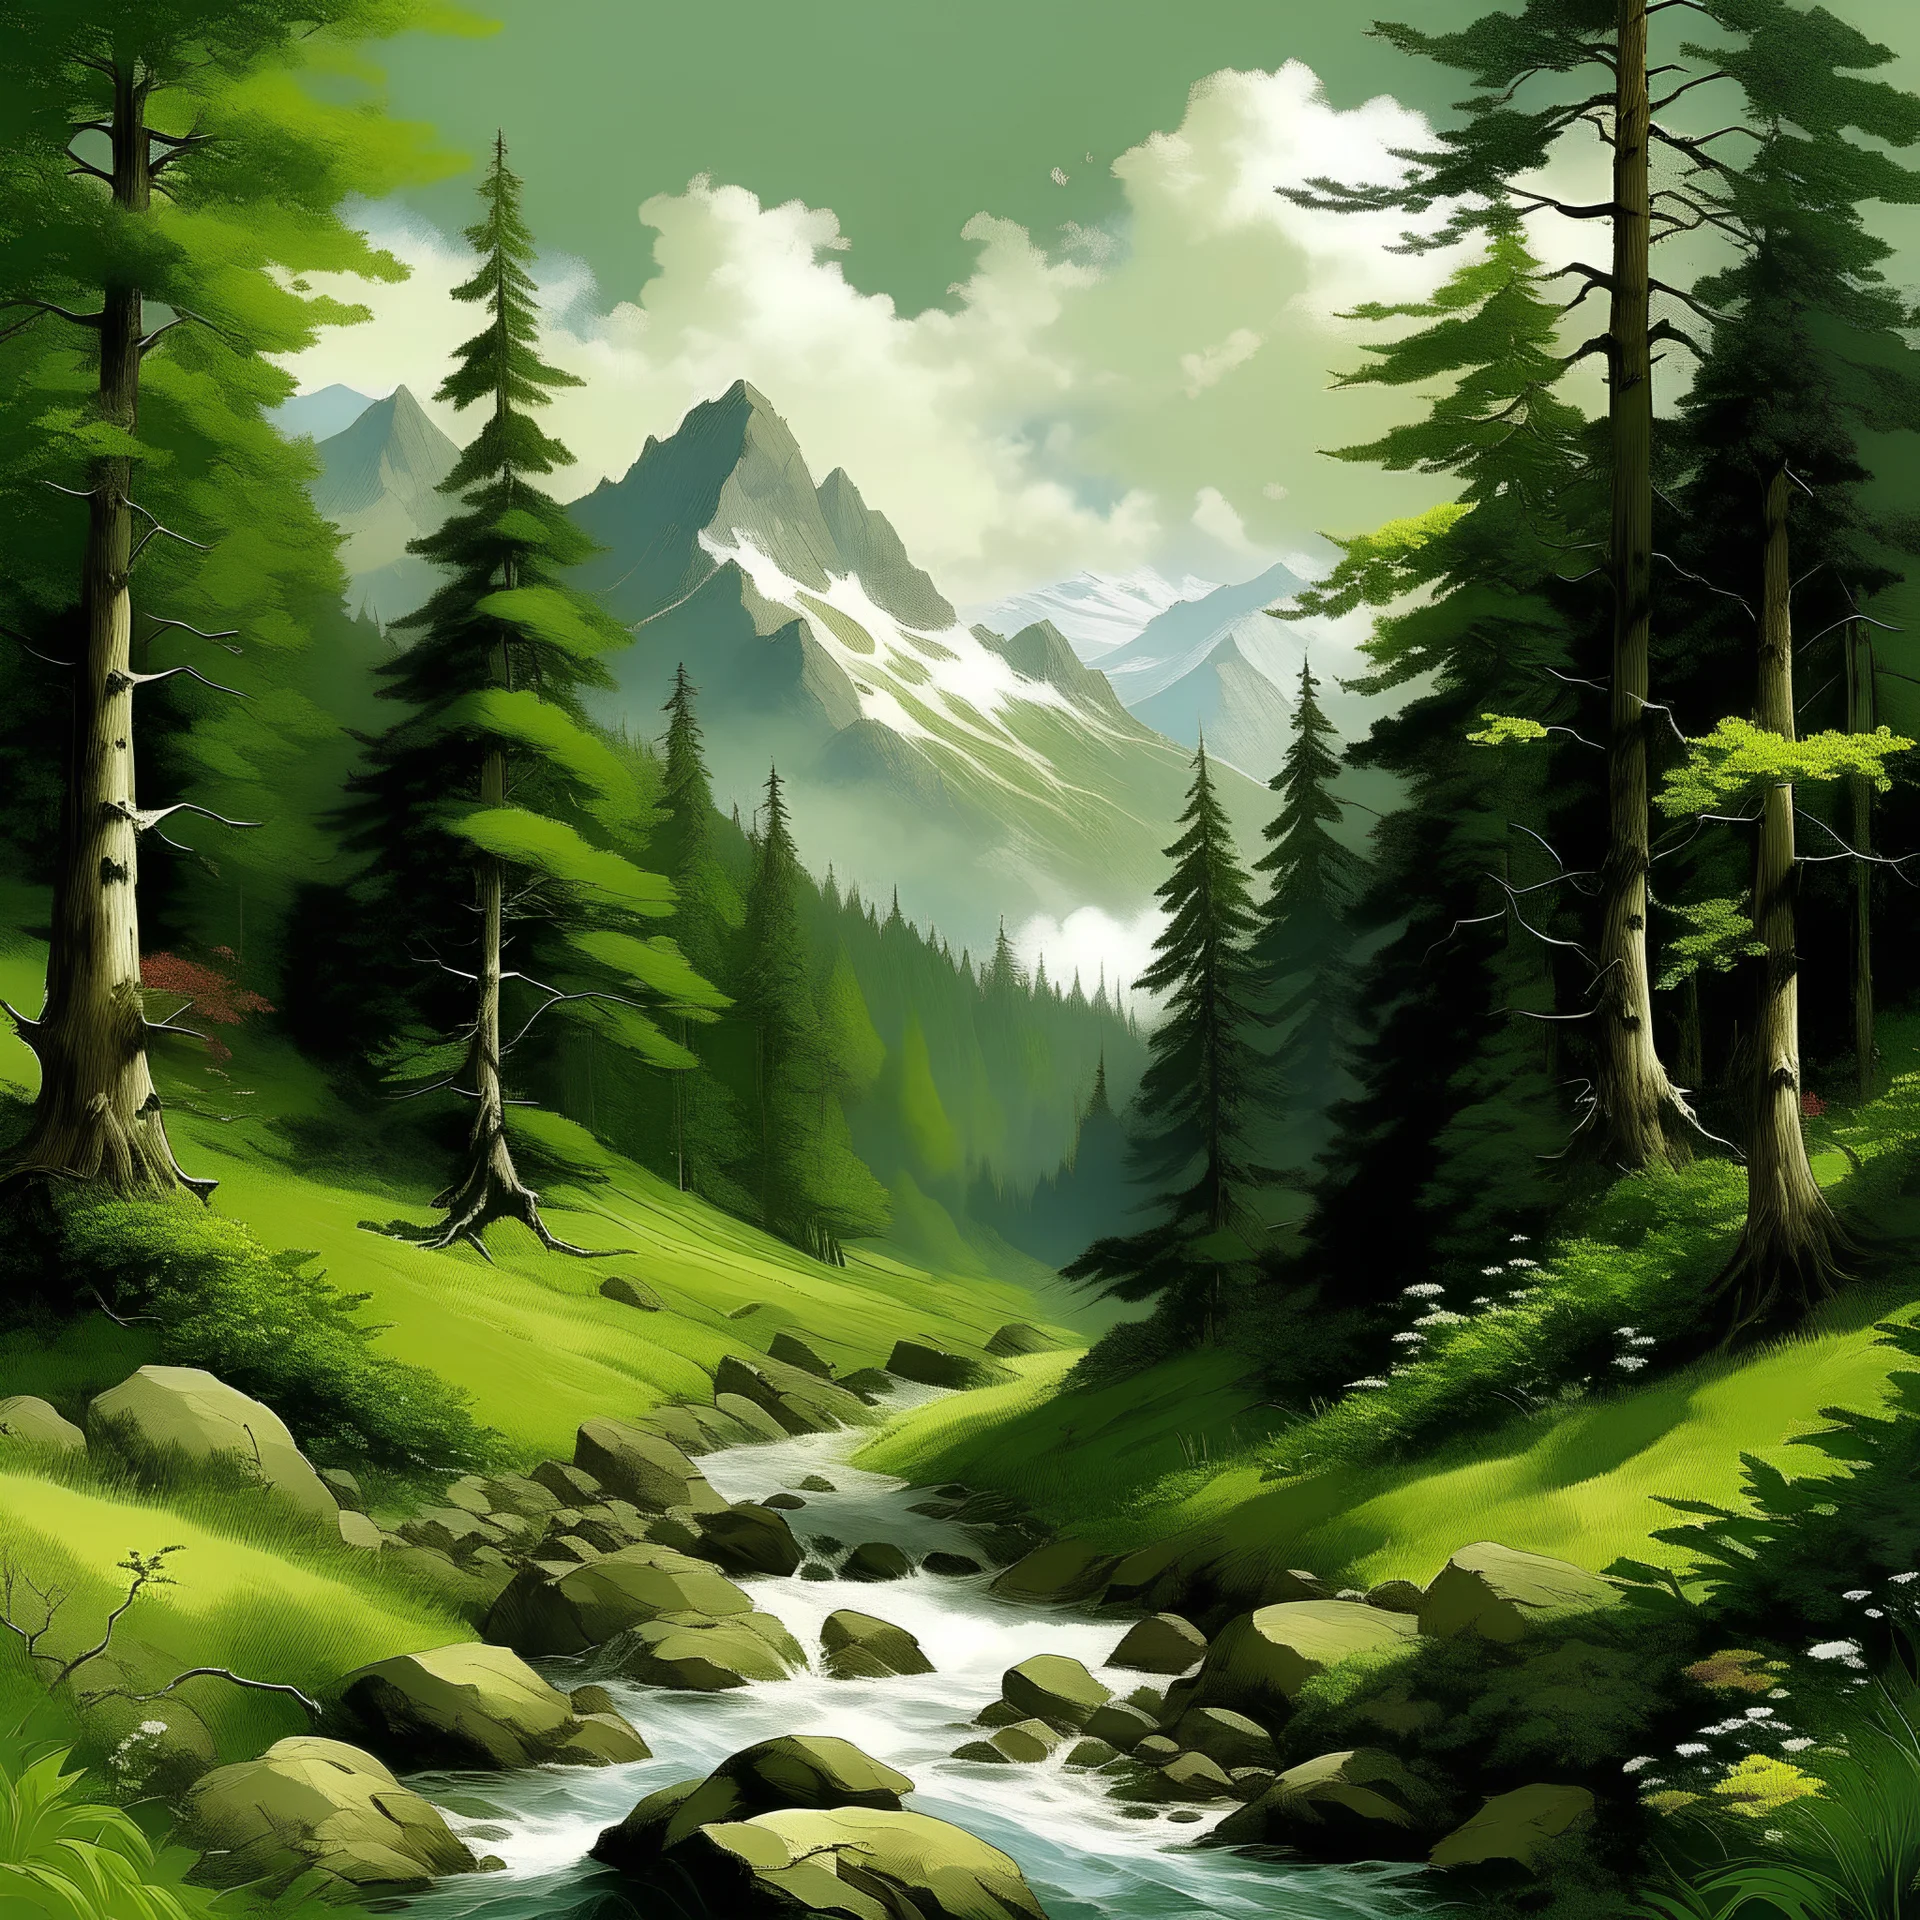 crear imagen de un bosque con montañas y ríos donde hay gran variedad de fauna y flora.